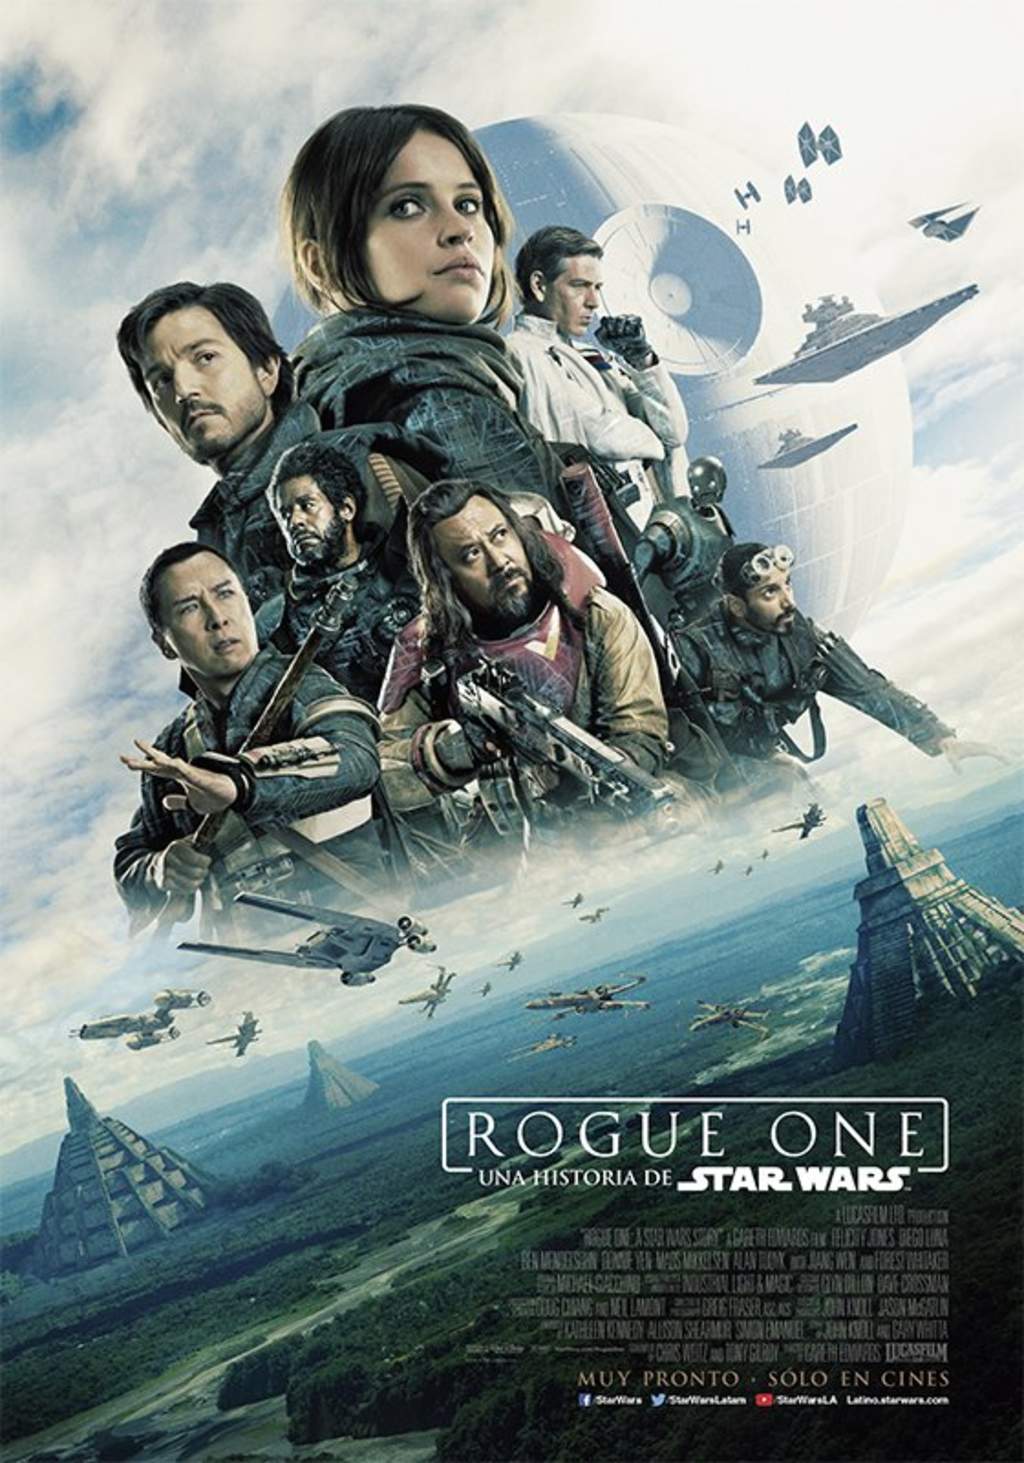 Lanzan pósters en español de "Rogue One, una historia de Star Wars"